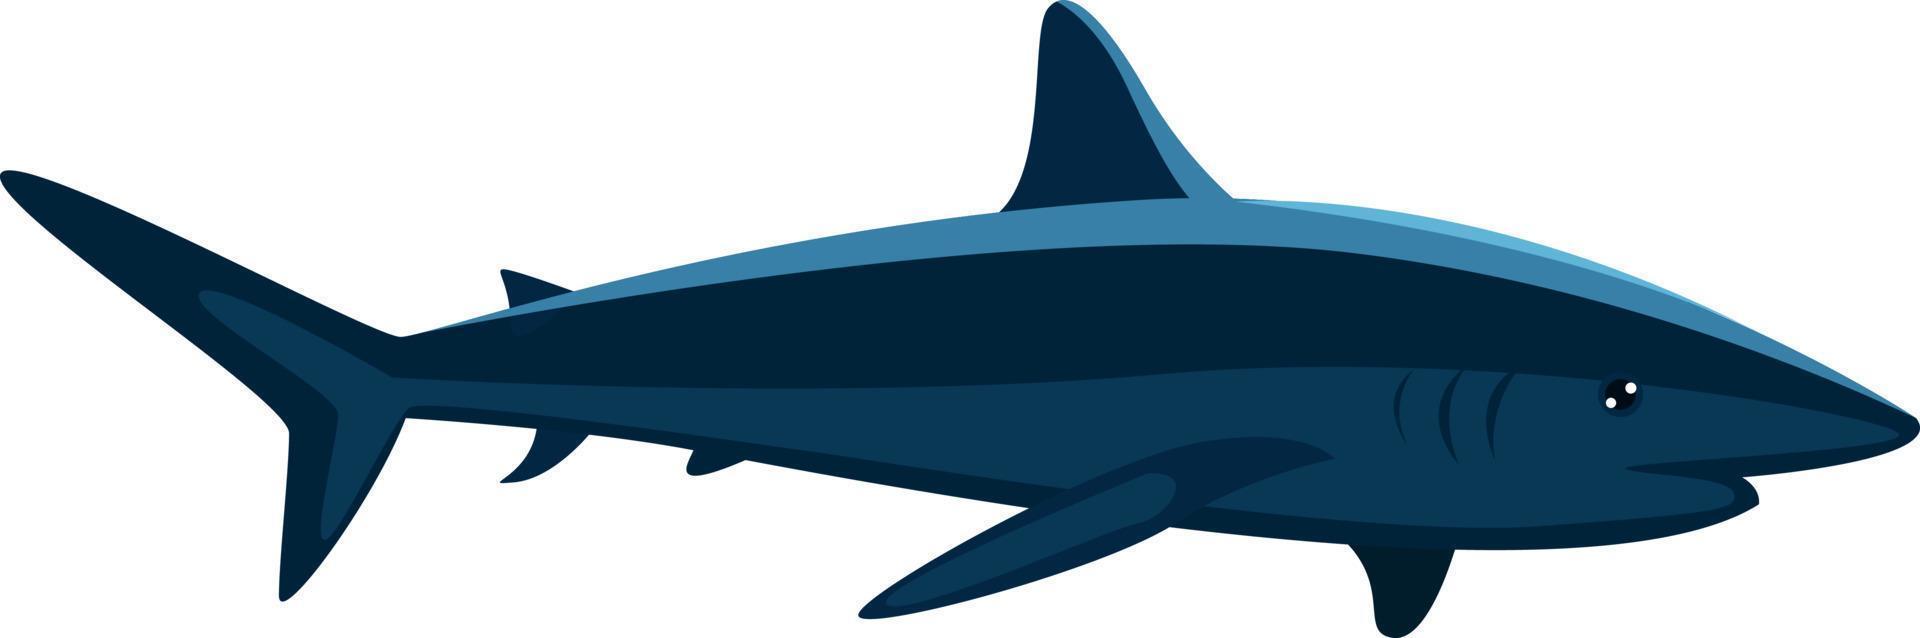 assustador tubarão azul, ilustração, vetor em fundo branco.